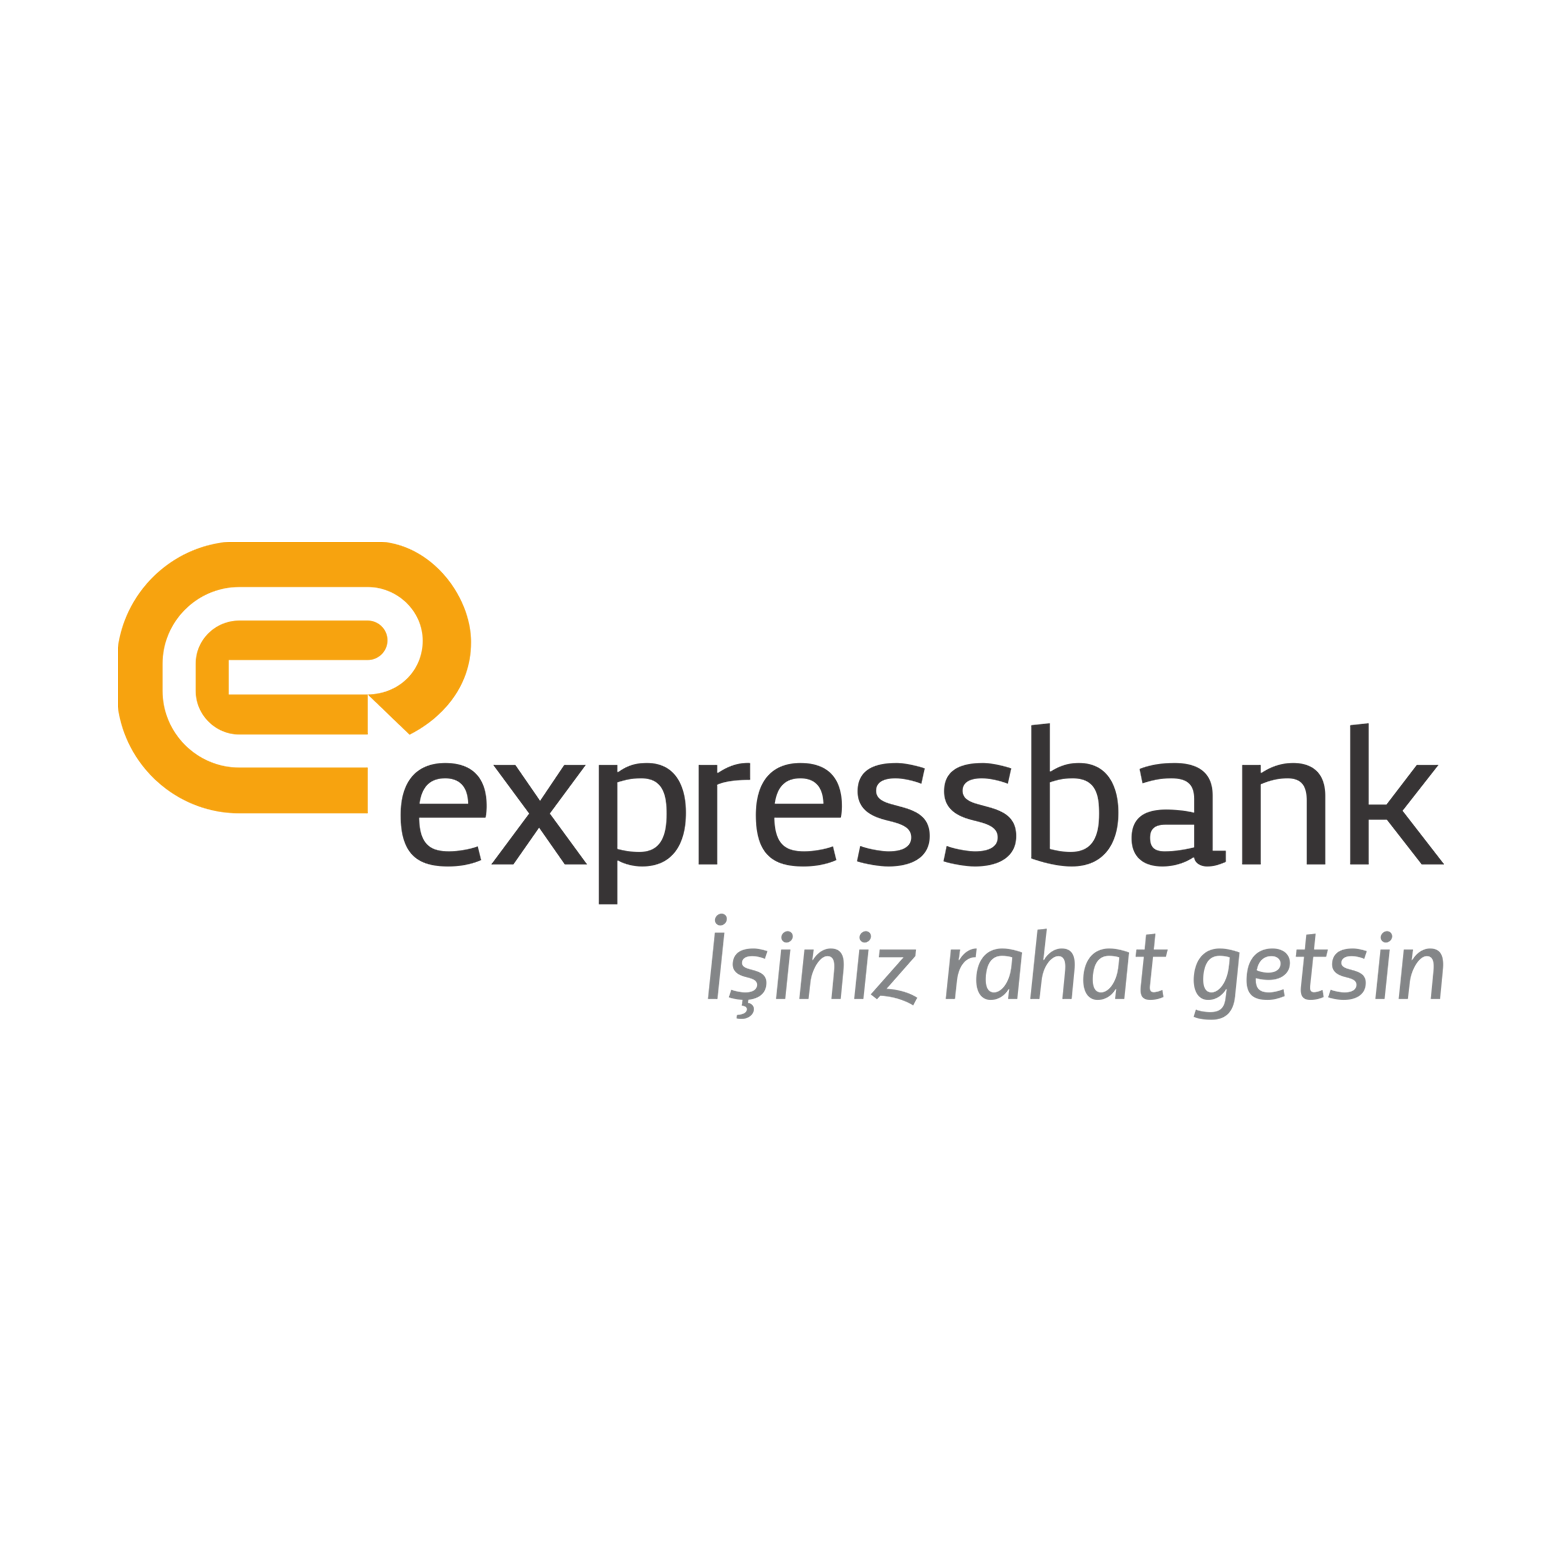 Expressbank-ın xalis mənfəəti son bir il ərzində 3 dəfədən çox artmışdır.